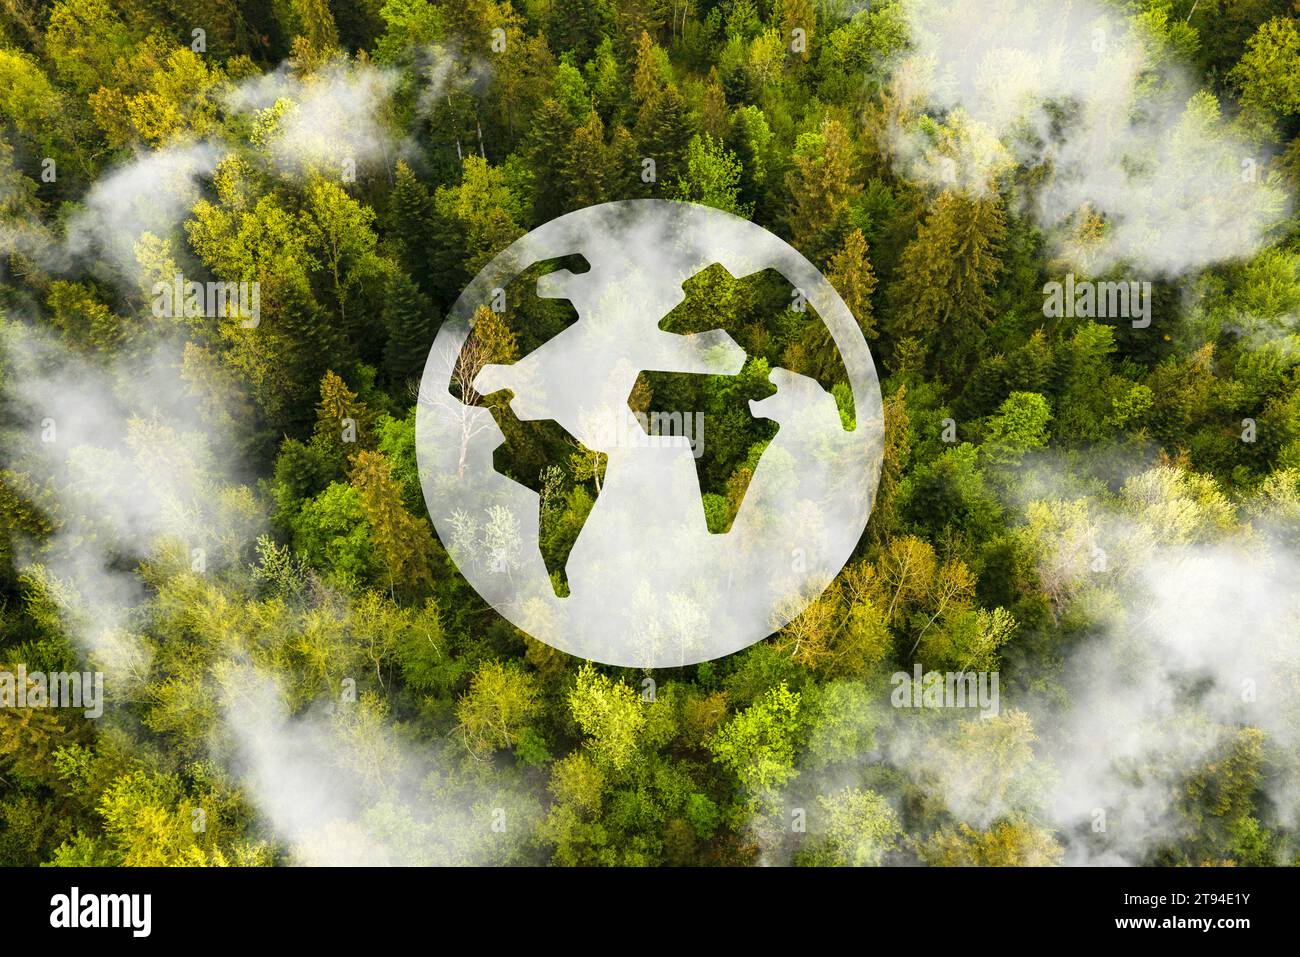 Vue aérienne de la forêt verte contre la terre. Démontre le concept de préservation de l'écosystème et de la nature, de pollution de l'air et de sauvegarde de la planète. Banque D'Images